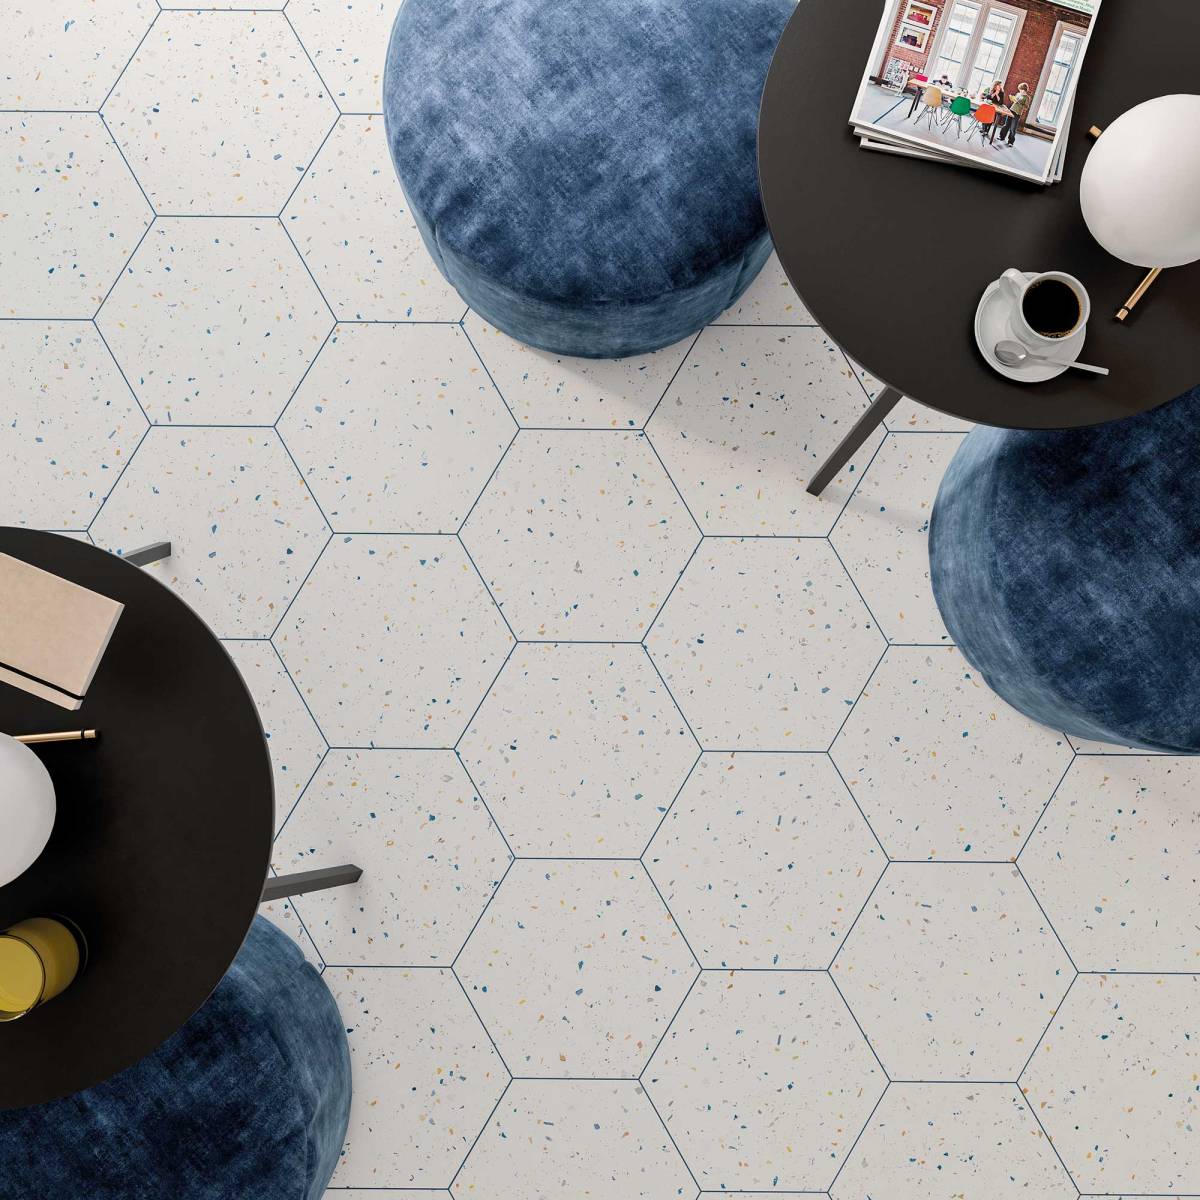 Widok z góry na podłogę wyłożoną płytkami heksagonalnymi lastryko, z okrągłymi stolikami i niebieskimi pufami